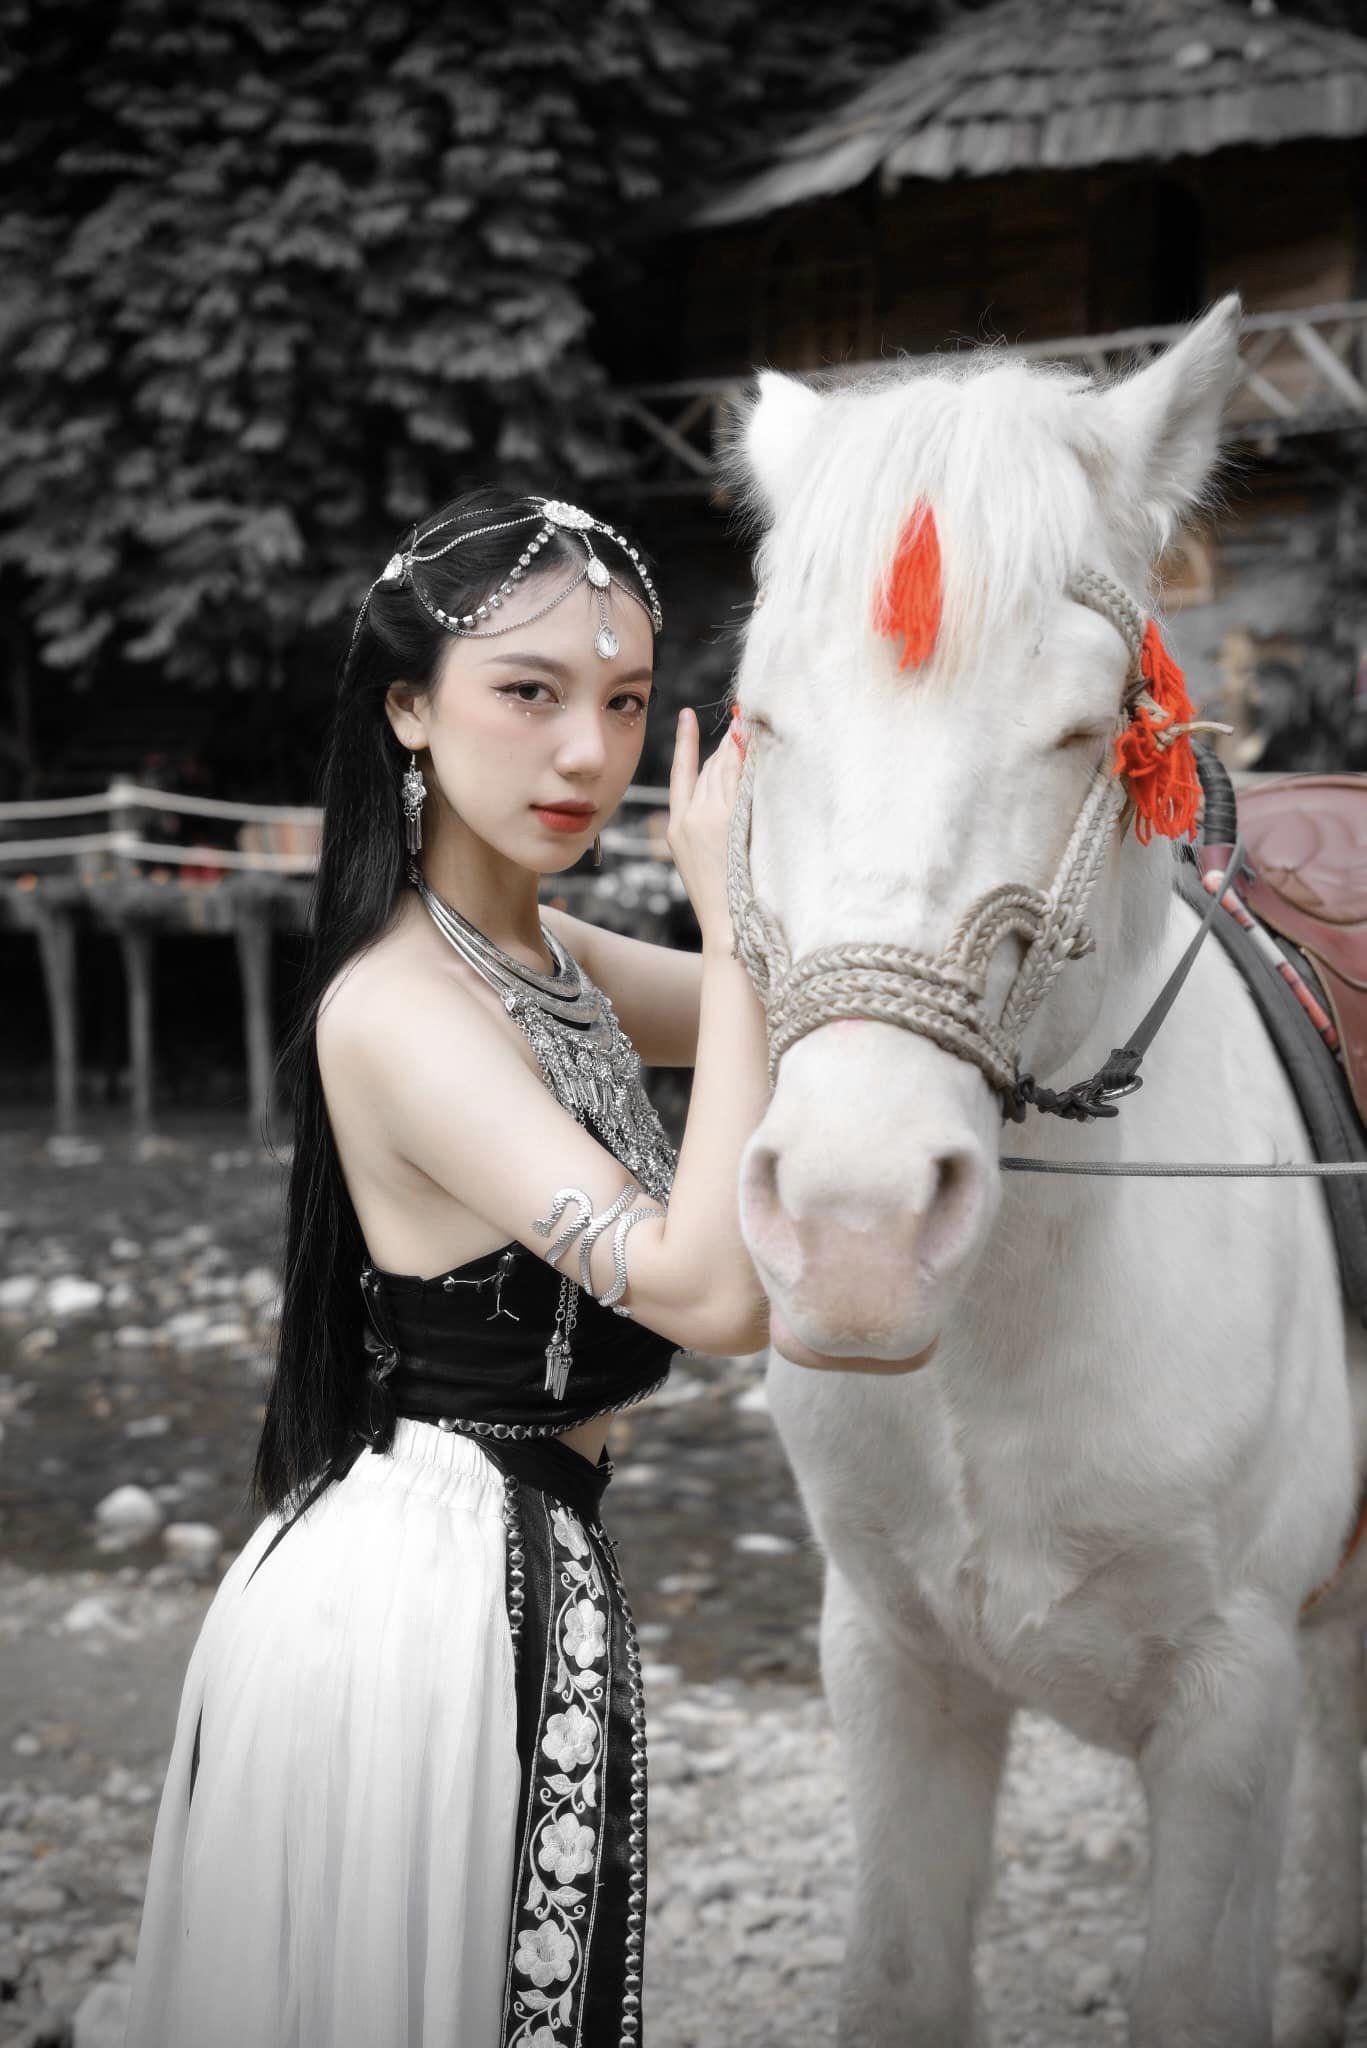 Cưỡi ngựa, bắn cung, nữ diễn viên 20 tuổi diện áo yếm khoe da trắng phát sáng, dáng nuột nà - 4